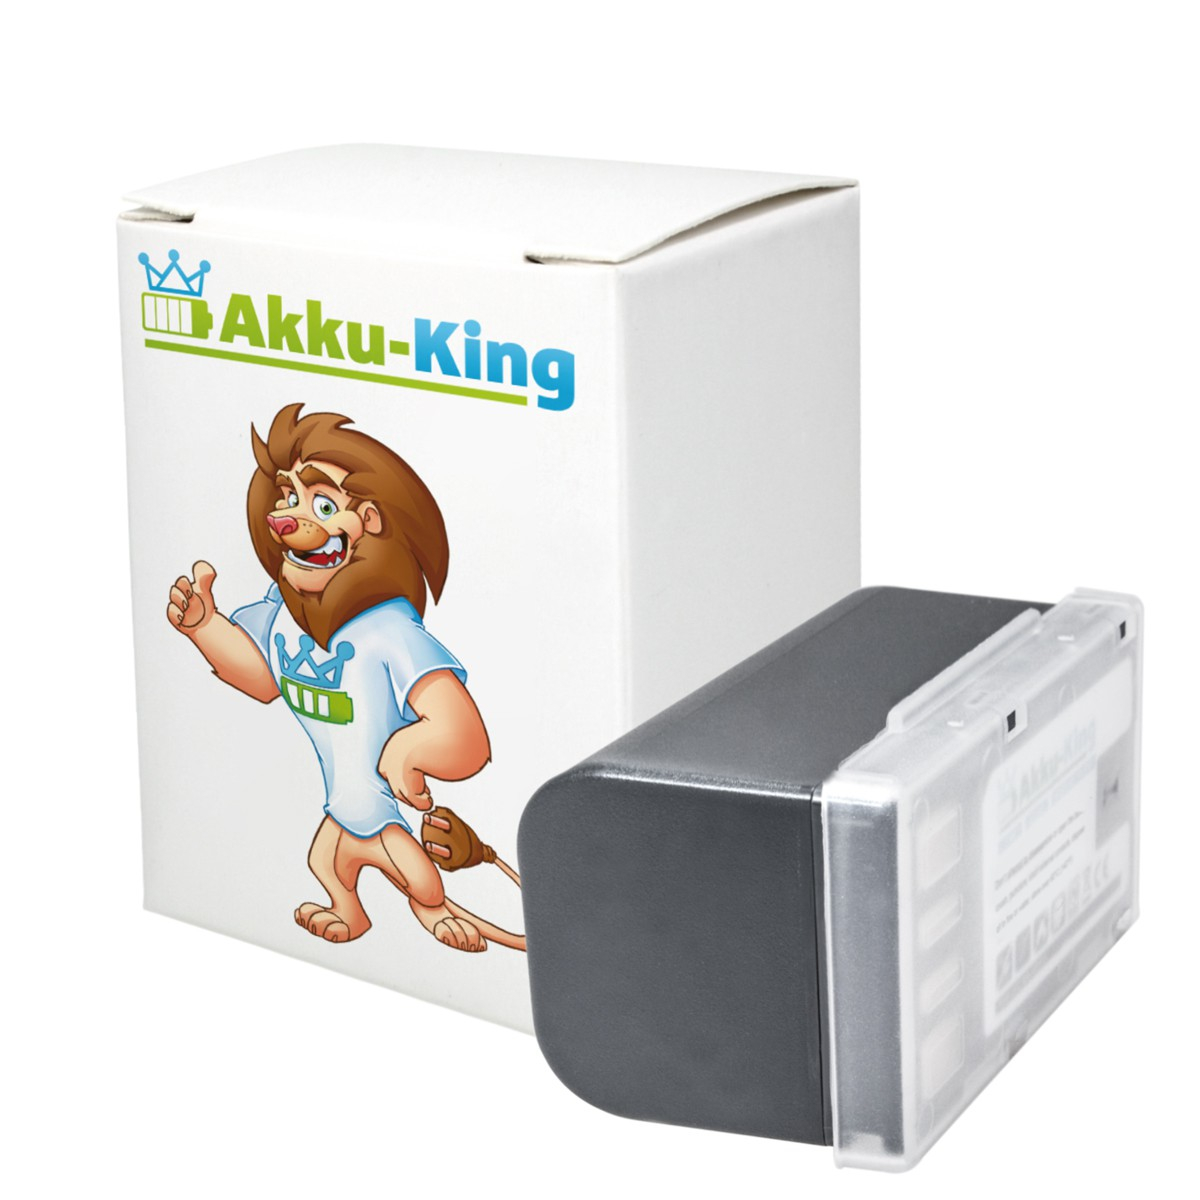 JVC Volt, Kamera-Akku, Akku BN-VF815 kompatibel 7.4 Li-Ion AKKU-KING mit 1600mAh